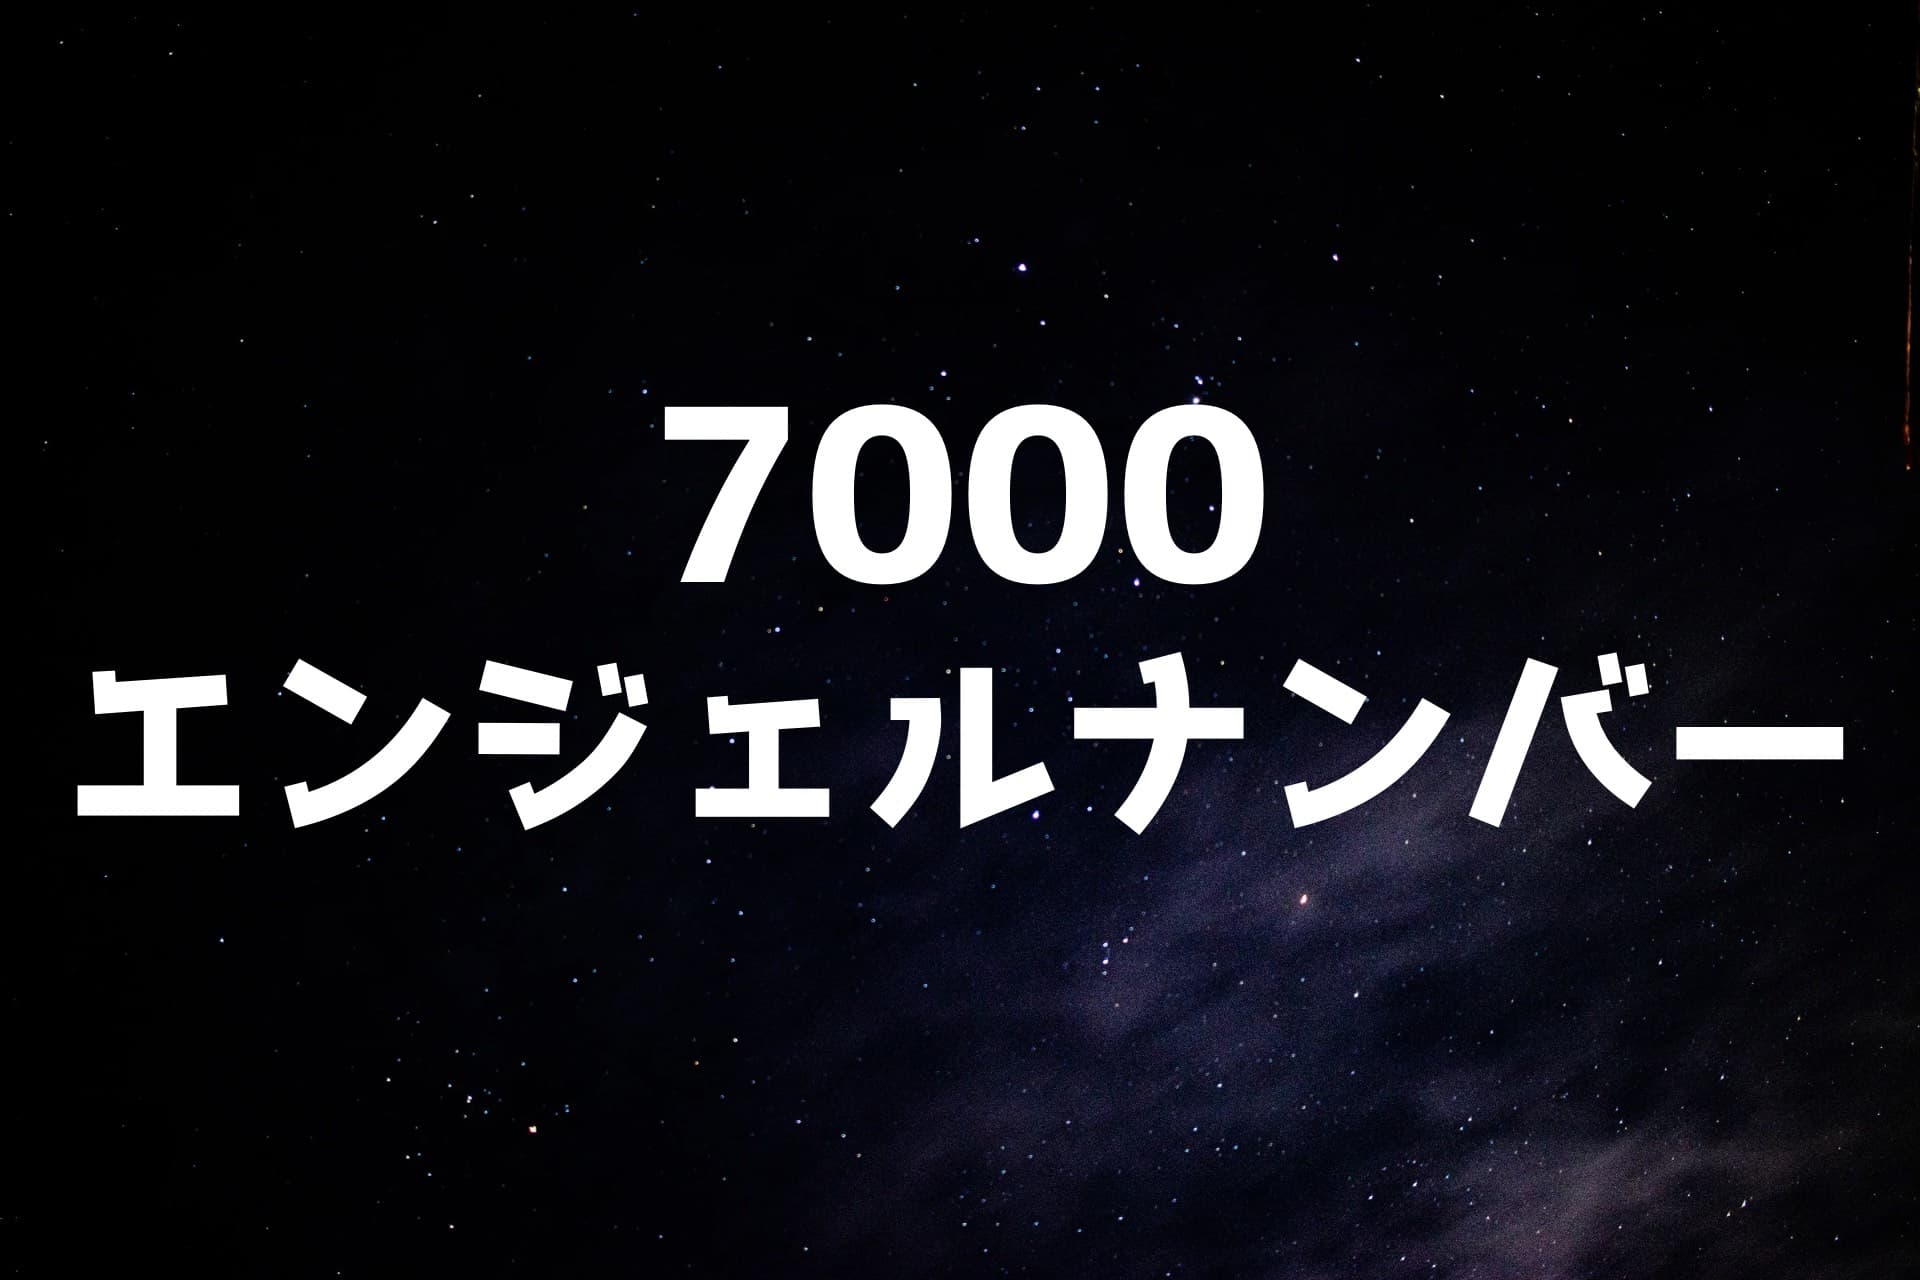 宇宙の背景に7000エンジェルナンバーの文字が書かれた画像